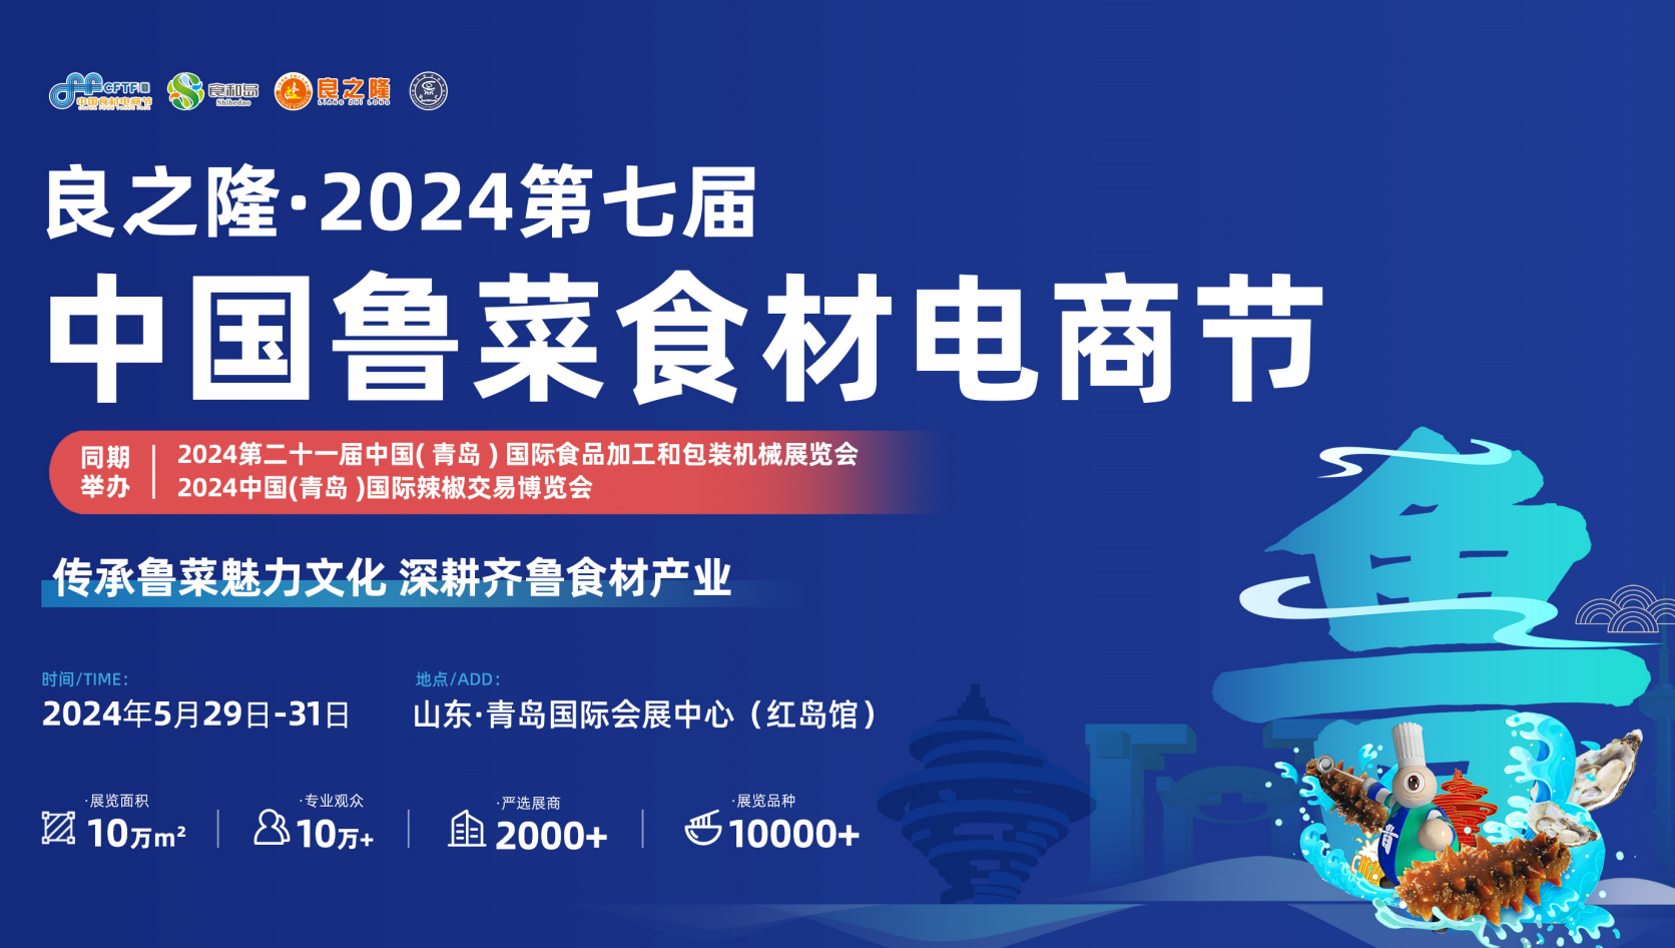 2024良之隆食材展-第七届中国食材展览会-鲁菜食材电商节